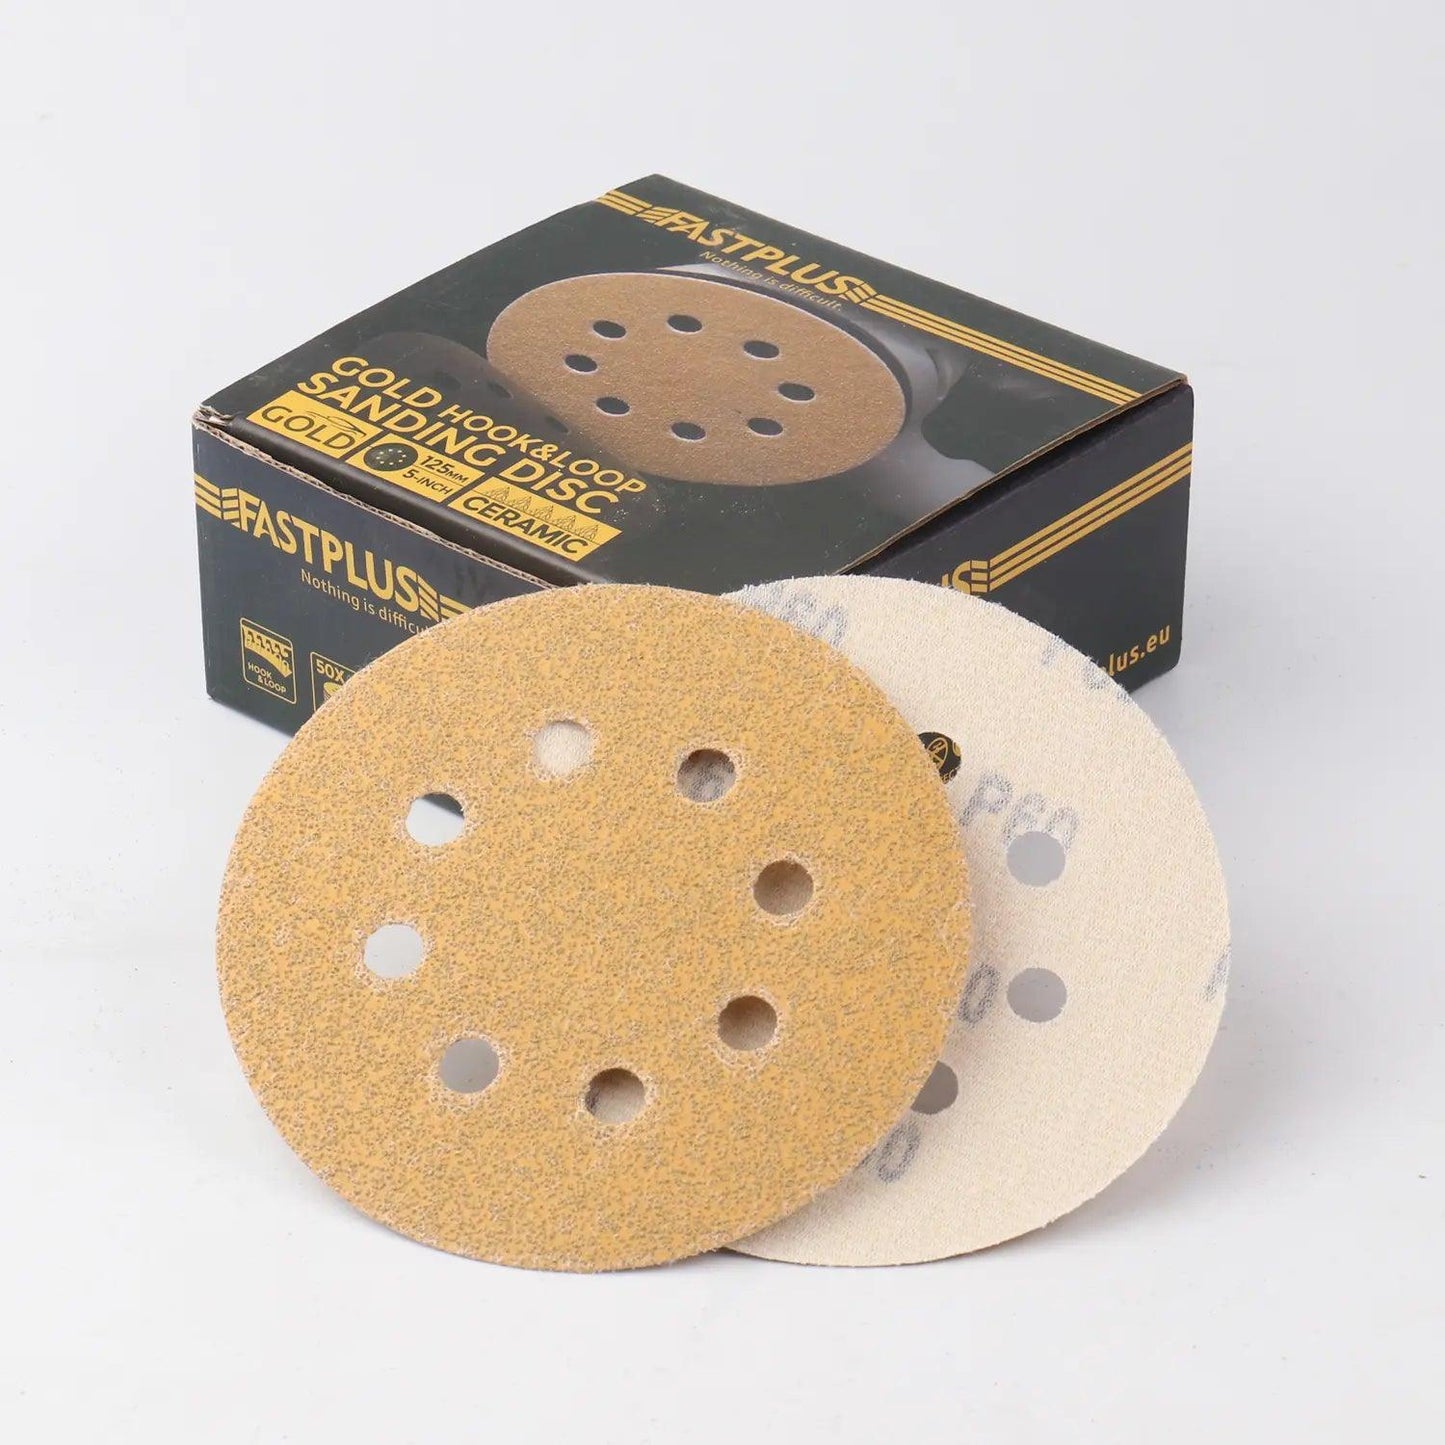 125mm Klett-schleifscheiben gold mirka f15 sanding discs fastplus P60